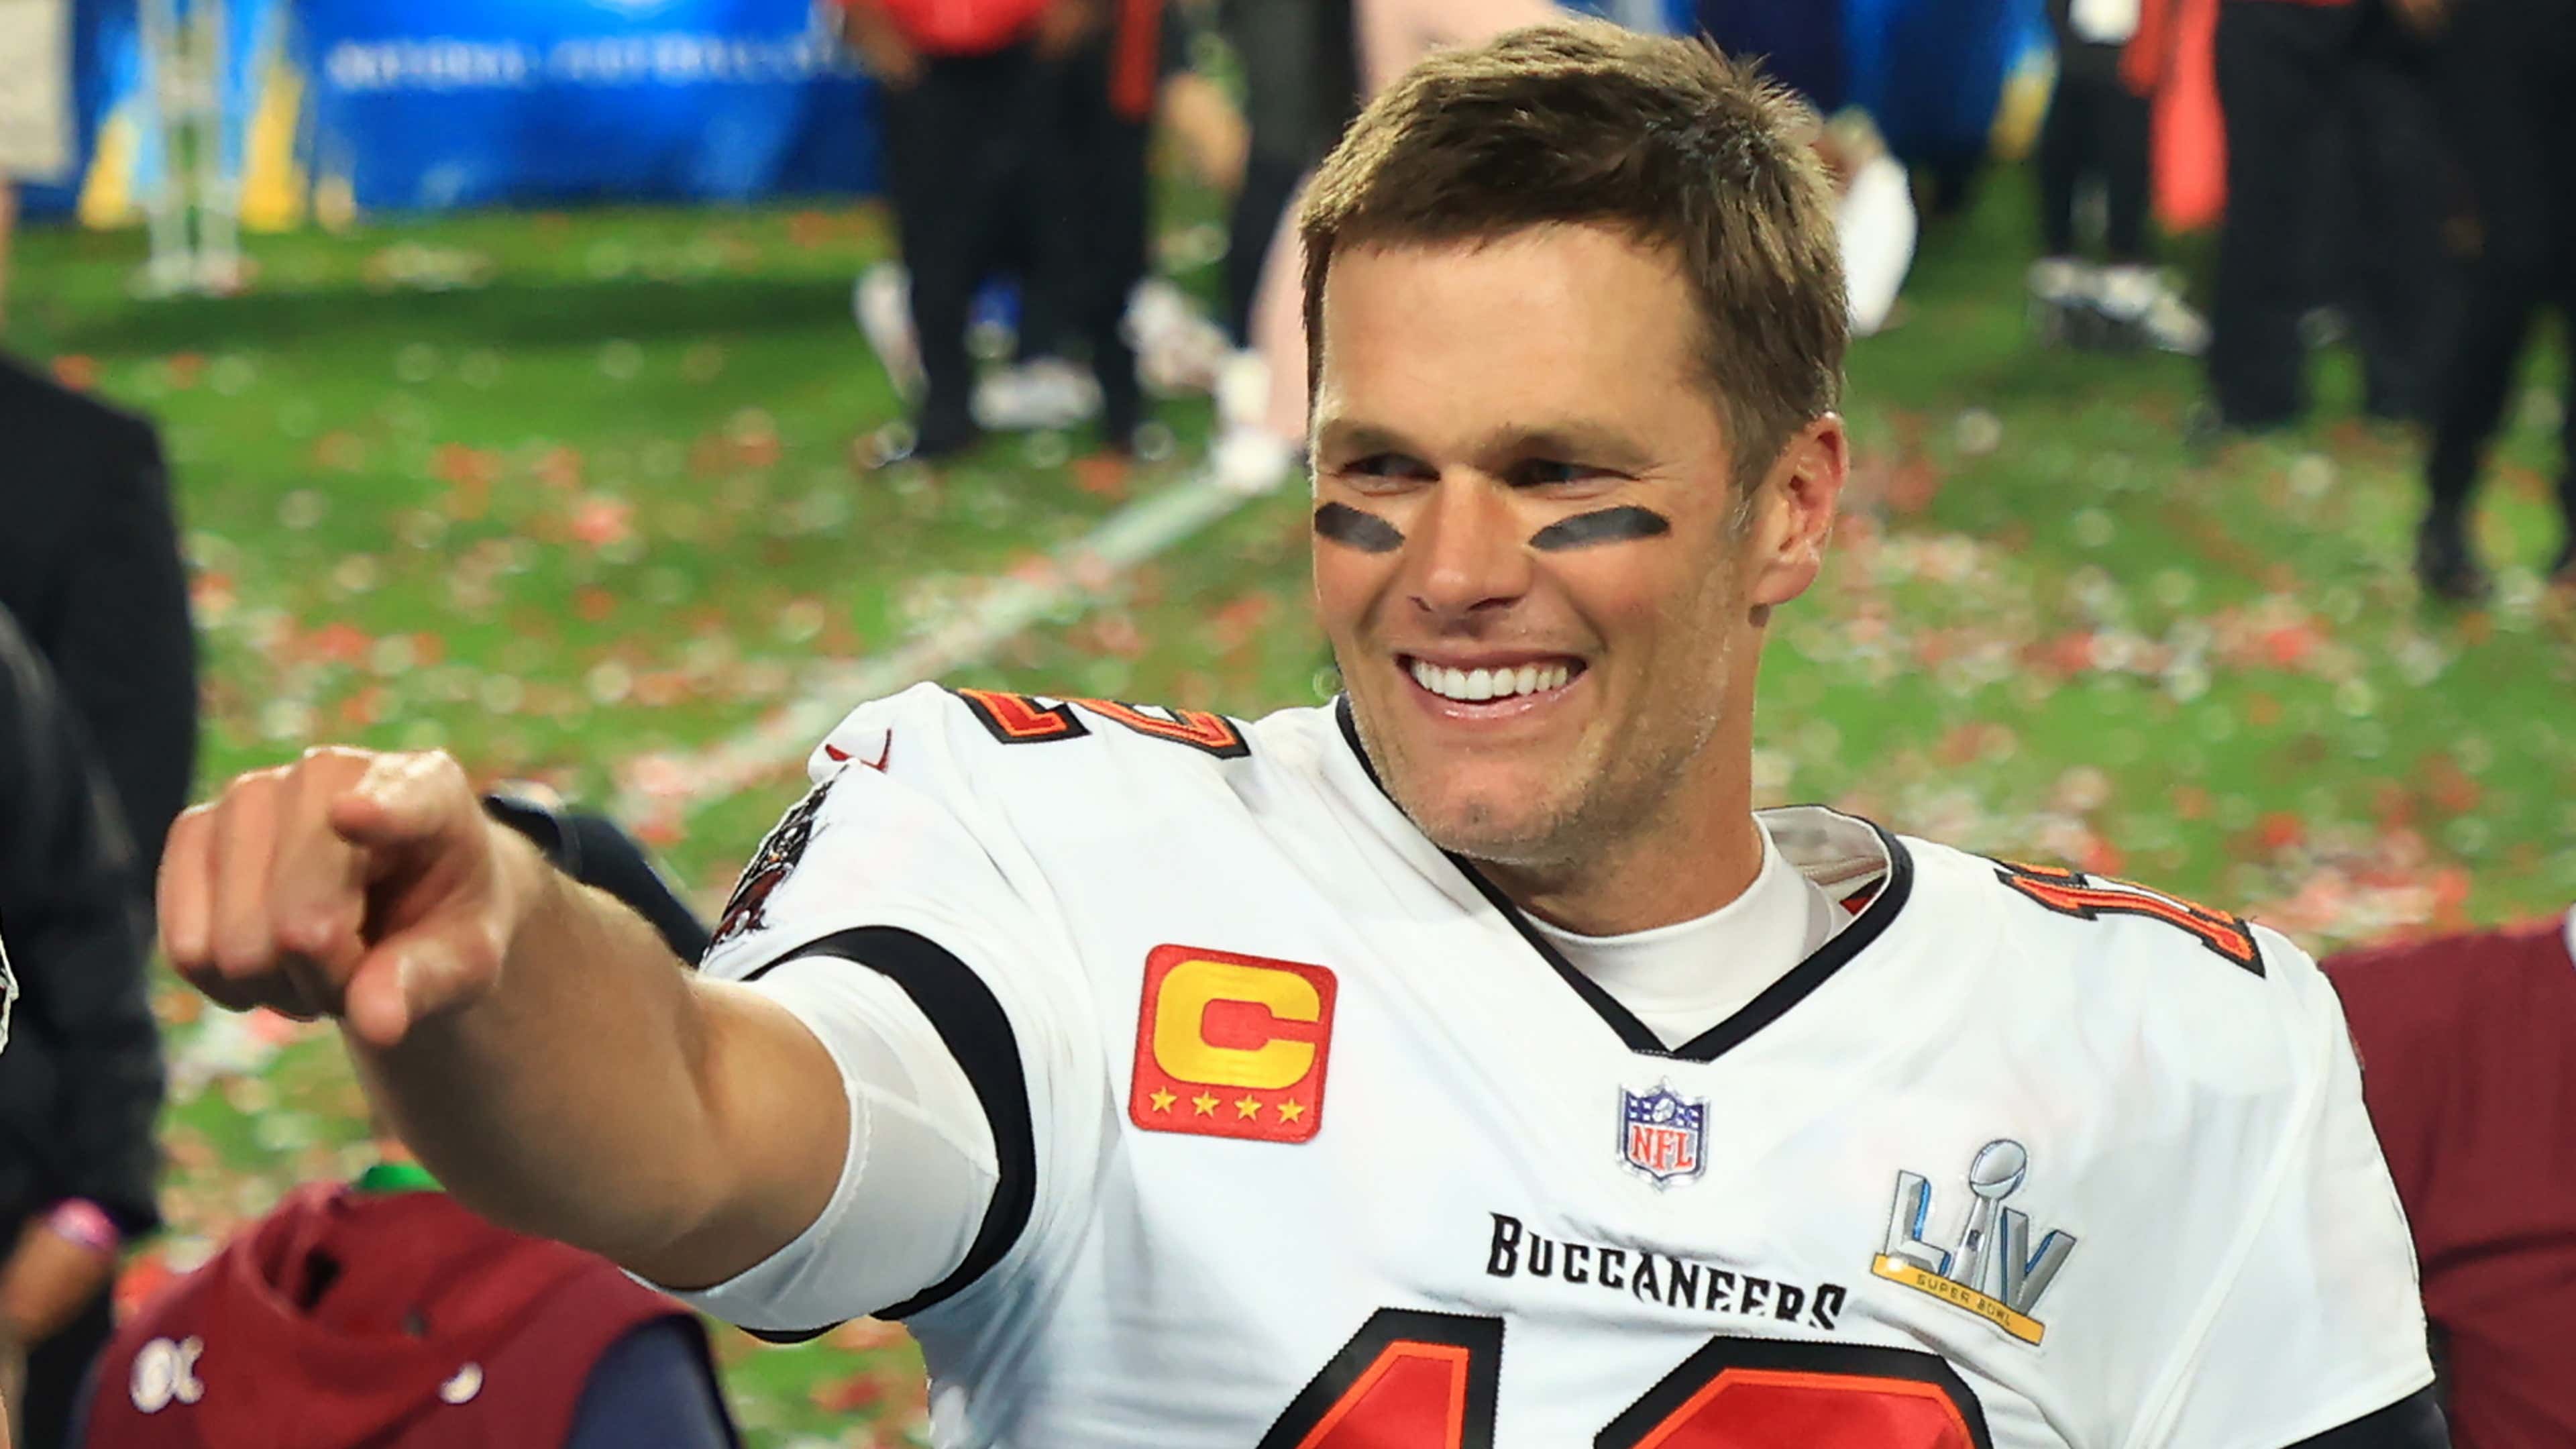 NFL'in efsane ismi Tom Brady'nin emekliliği, futbol dünyasında da yankı